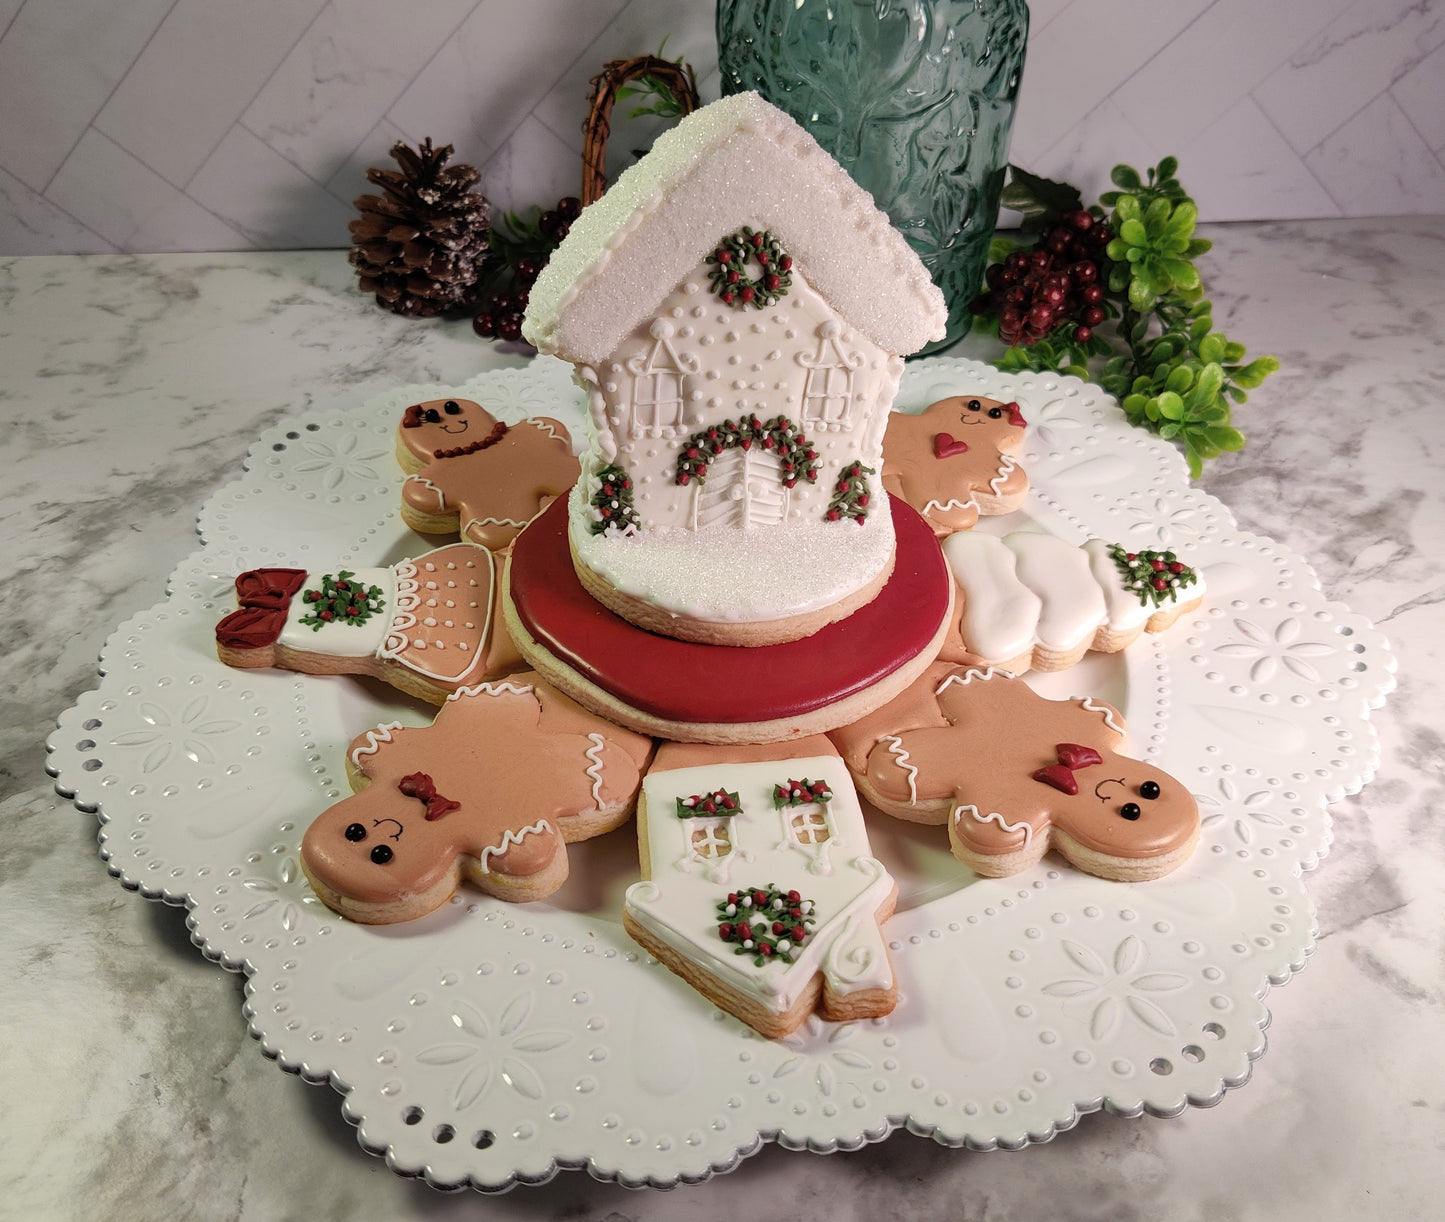 Digital STL Download: Gingerbread Joy Platter Cookie Cutter Set